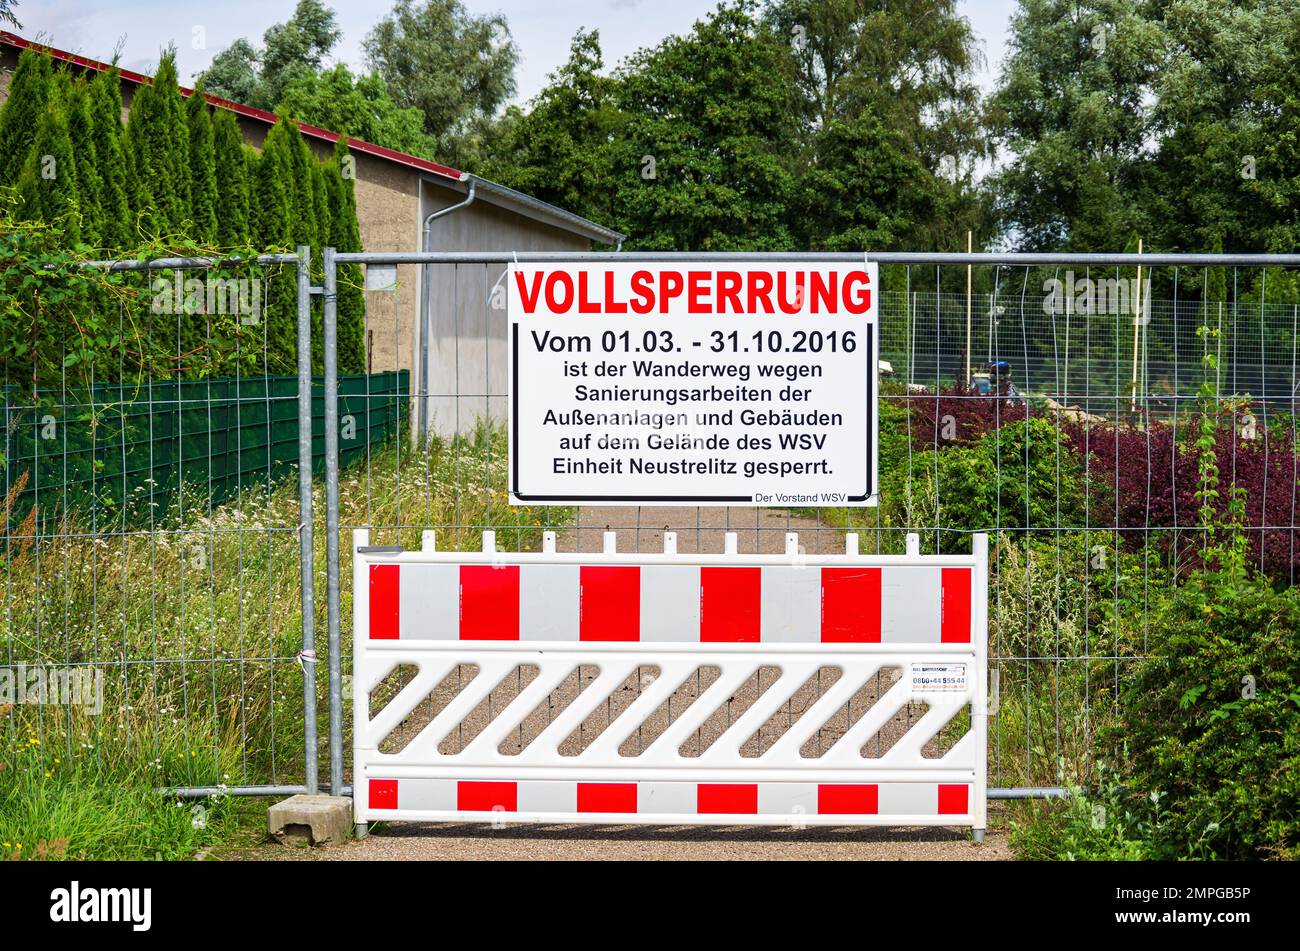 Schild VOLLSPERRUNG (VOLLSTÄNDIGE SCHLIESSUNG) auf dem Wanderweg rund um den Zierker See in Neustrelitz, Mecklenburg-Vorpommern, Deutschland. Stockfoto